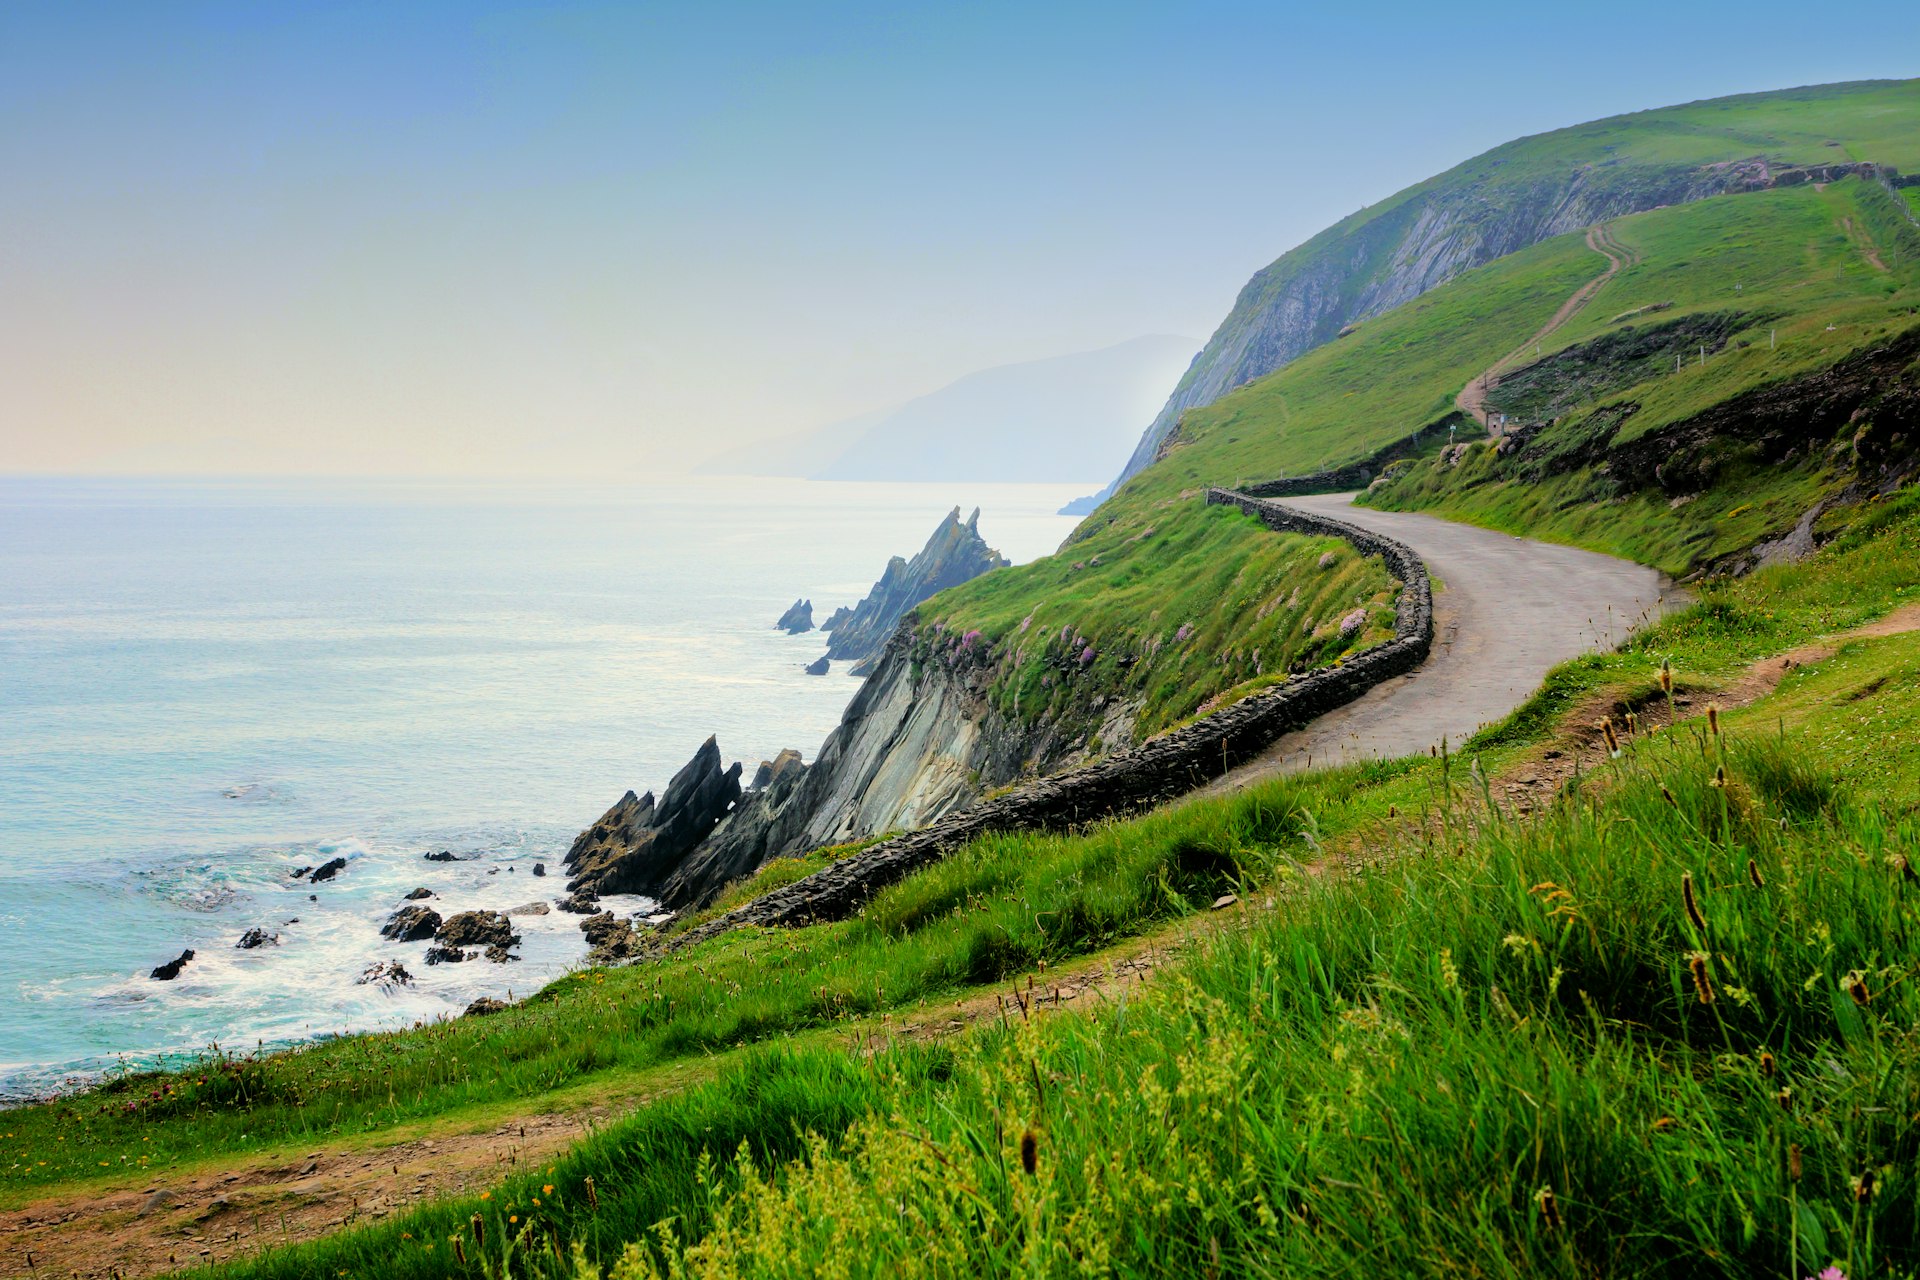 A narrow road along the scenic coast of Slea Head, Dingle Peninsula, County Kerry, Ireland